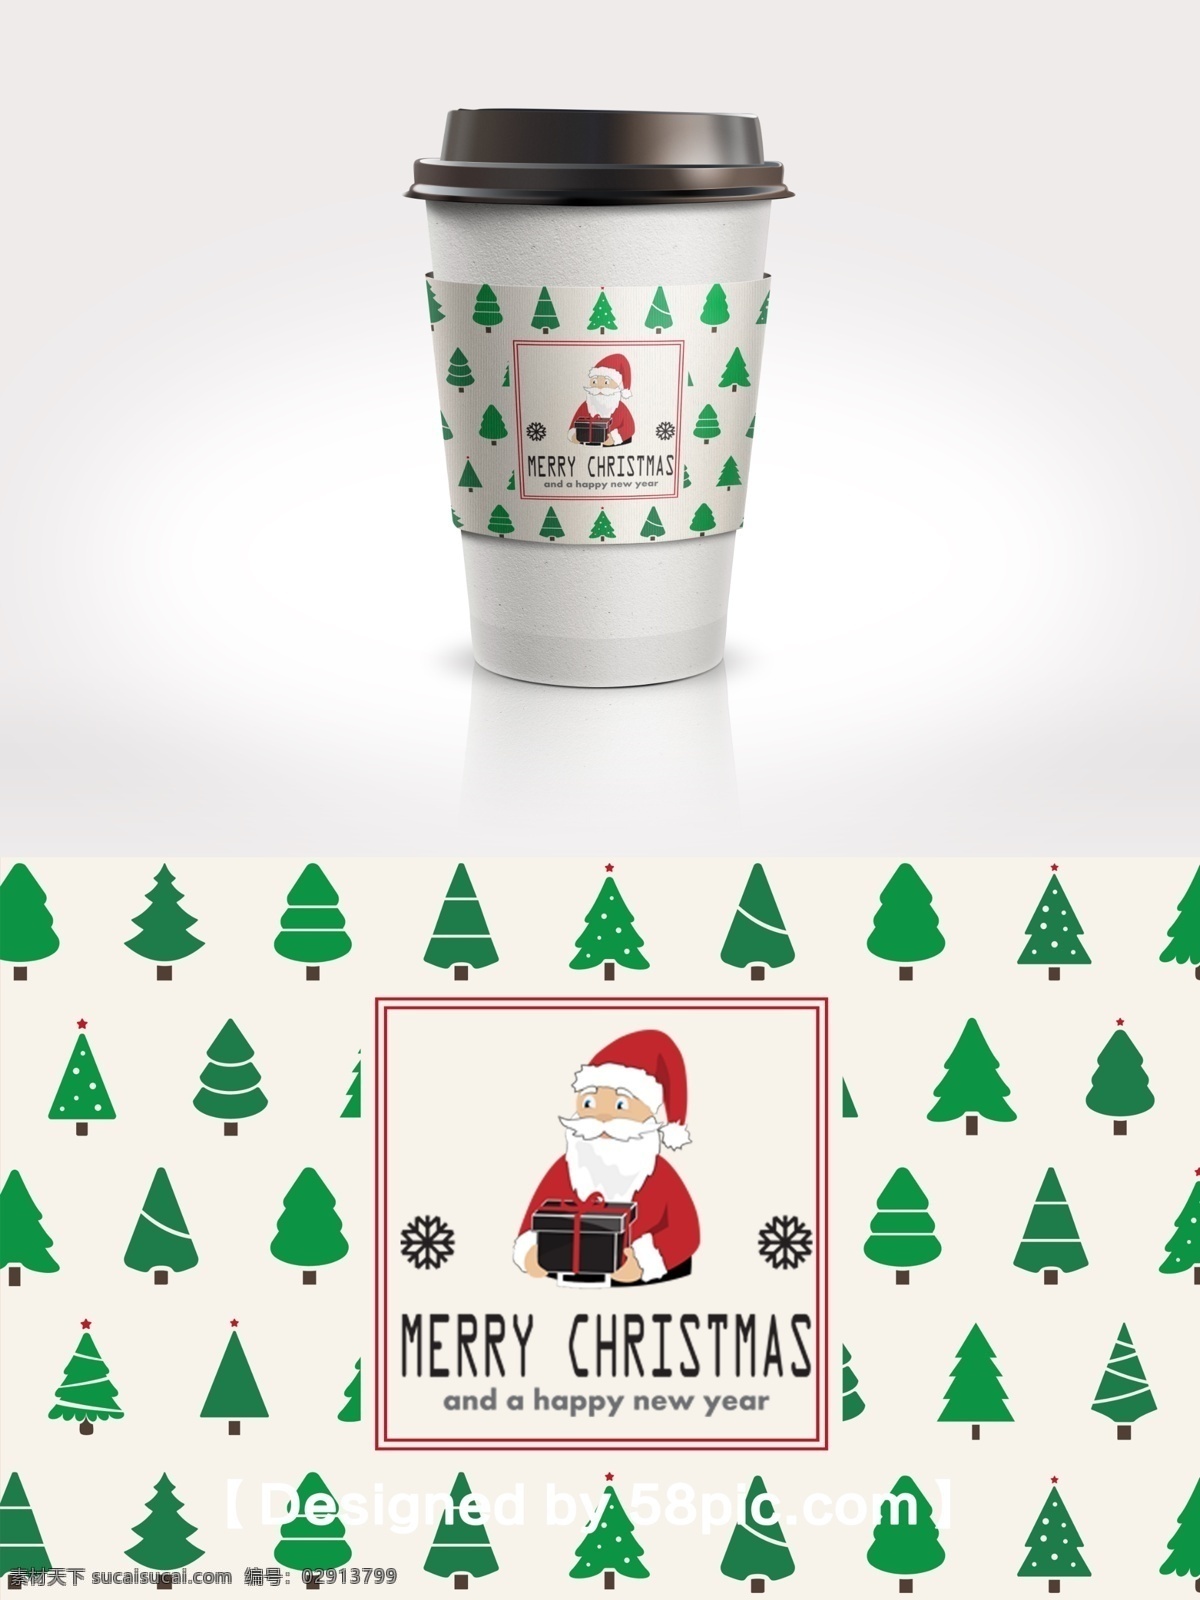 绿色 简约 圣诞树 节日 包装 咖啡杯 套 psd素材 简约大气 节日包装 圣诞树素材 圣诞老人 广告设计模版 咖啡杯套